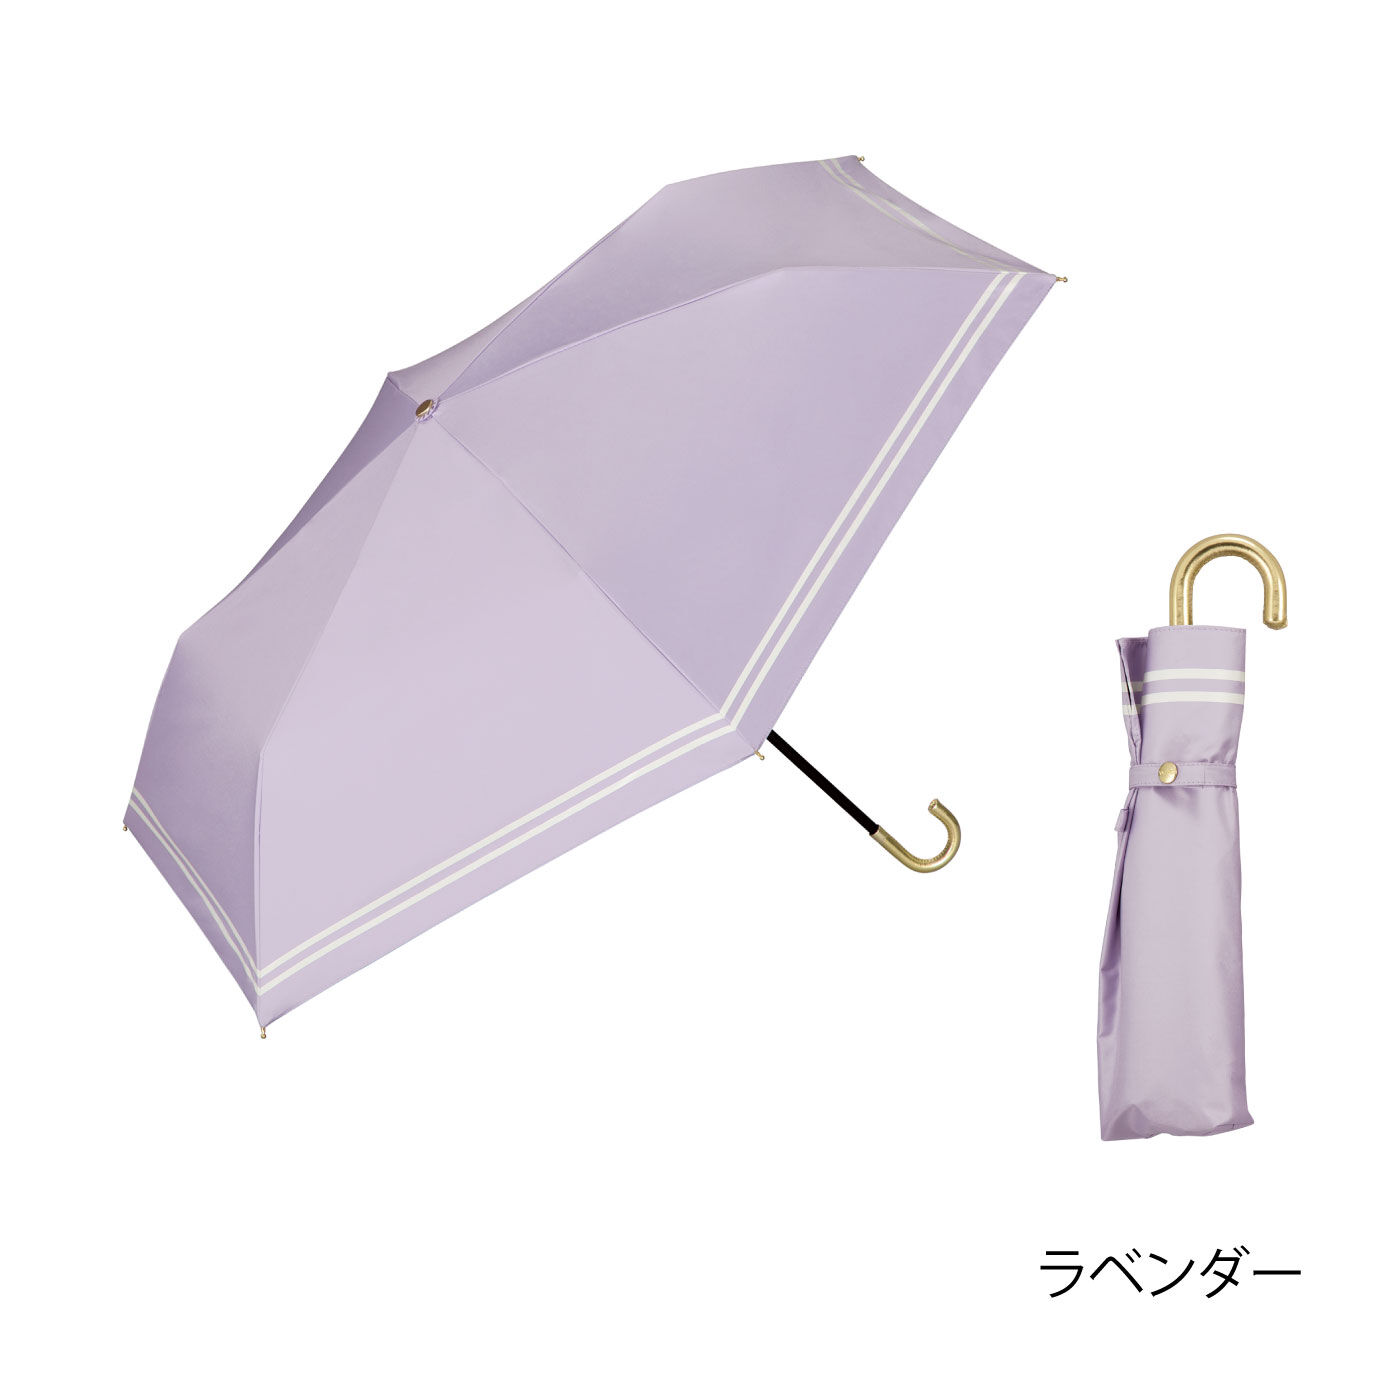 FELISSIMO PARTNERS|Ｗｐｃ.　小さくても頼れる相棒　コンパクト折りたたみ傘遮光セーラー晴雨兼用